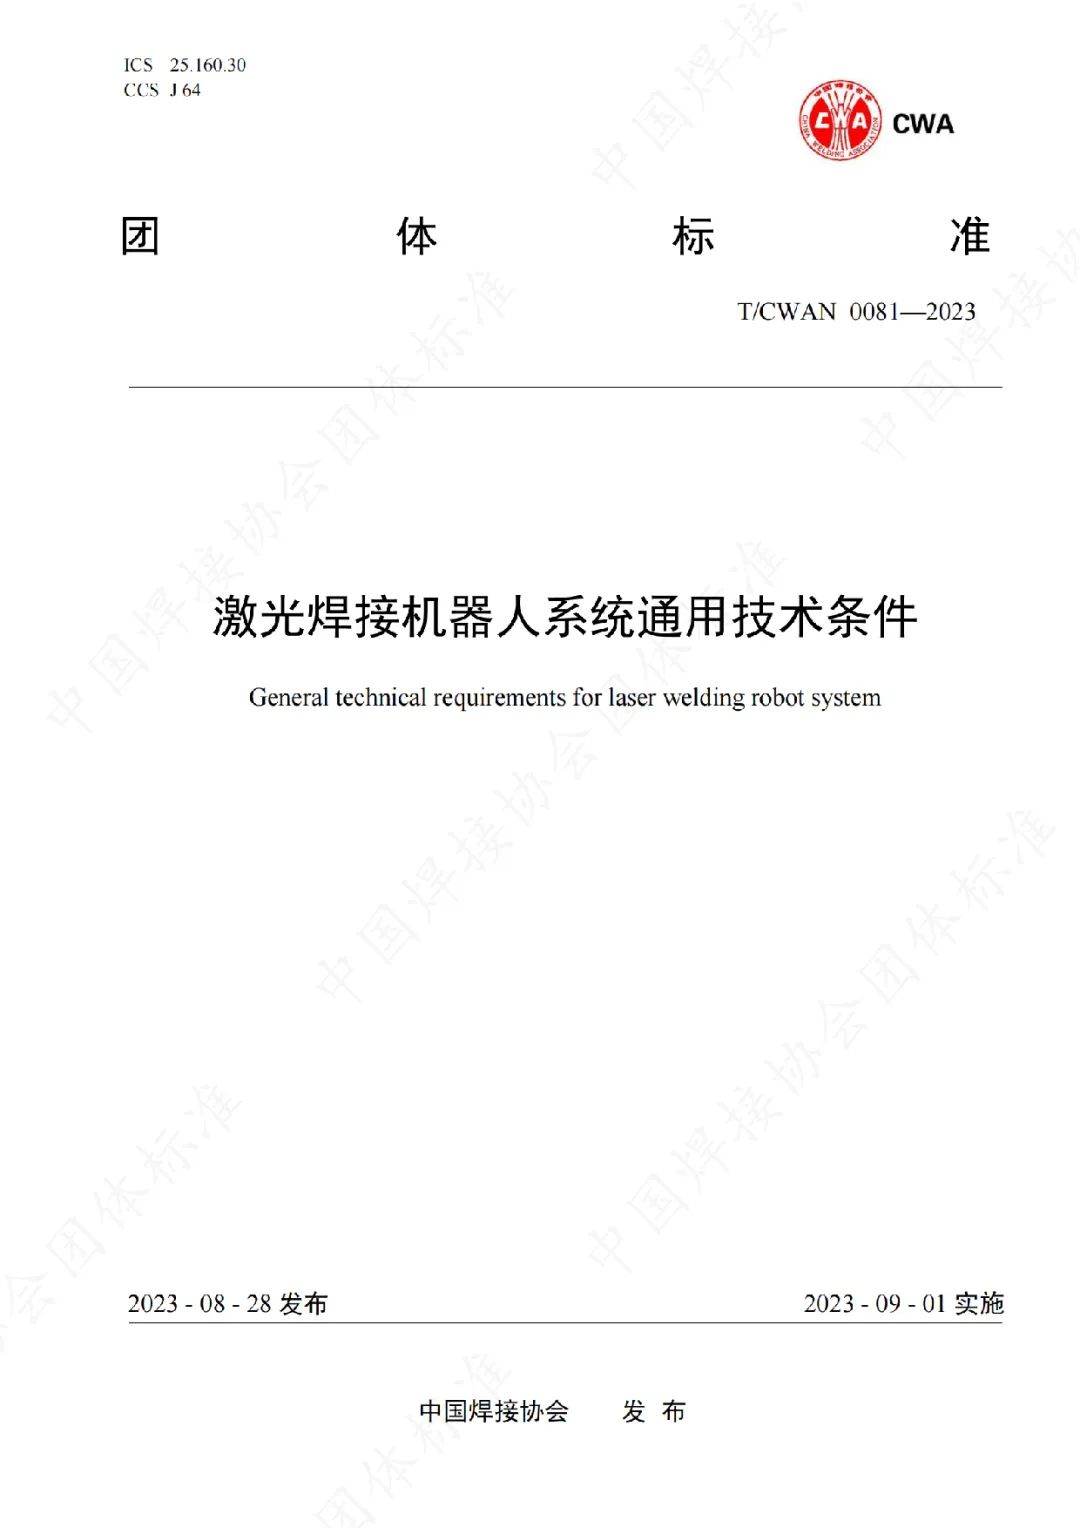 江苏北人参与制定的《激光焊接机器人系统通用技术条件》团体标准正式发布实施